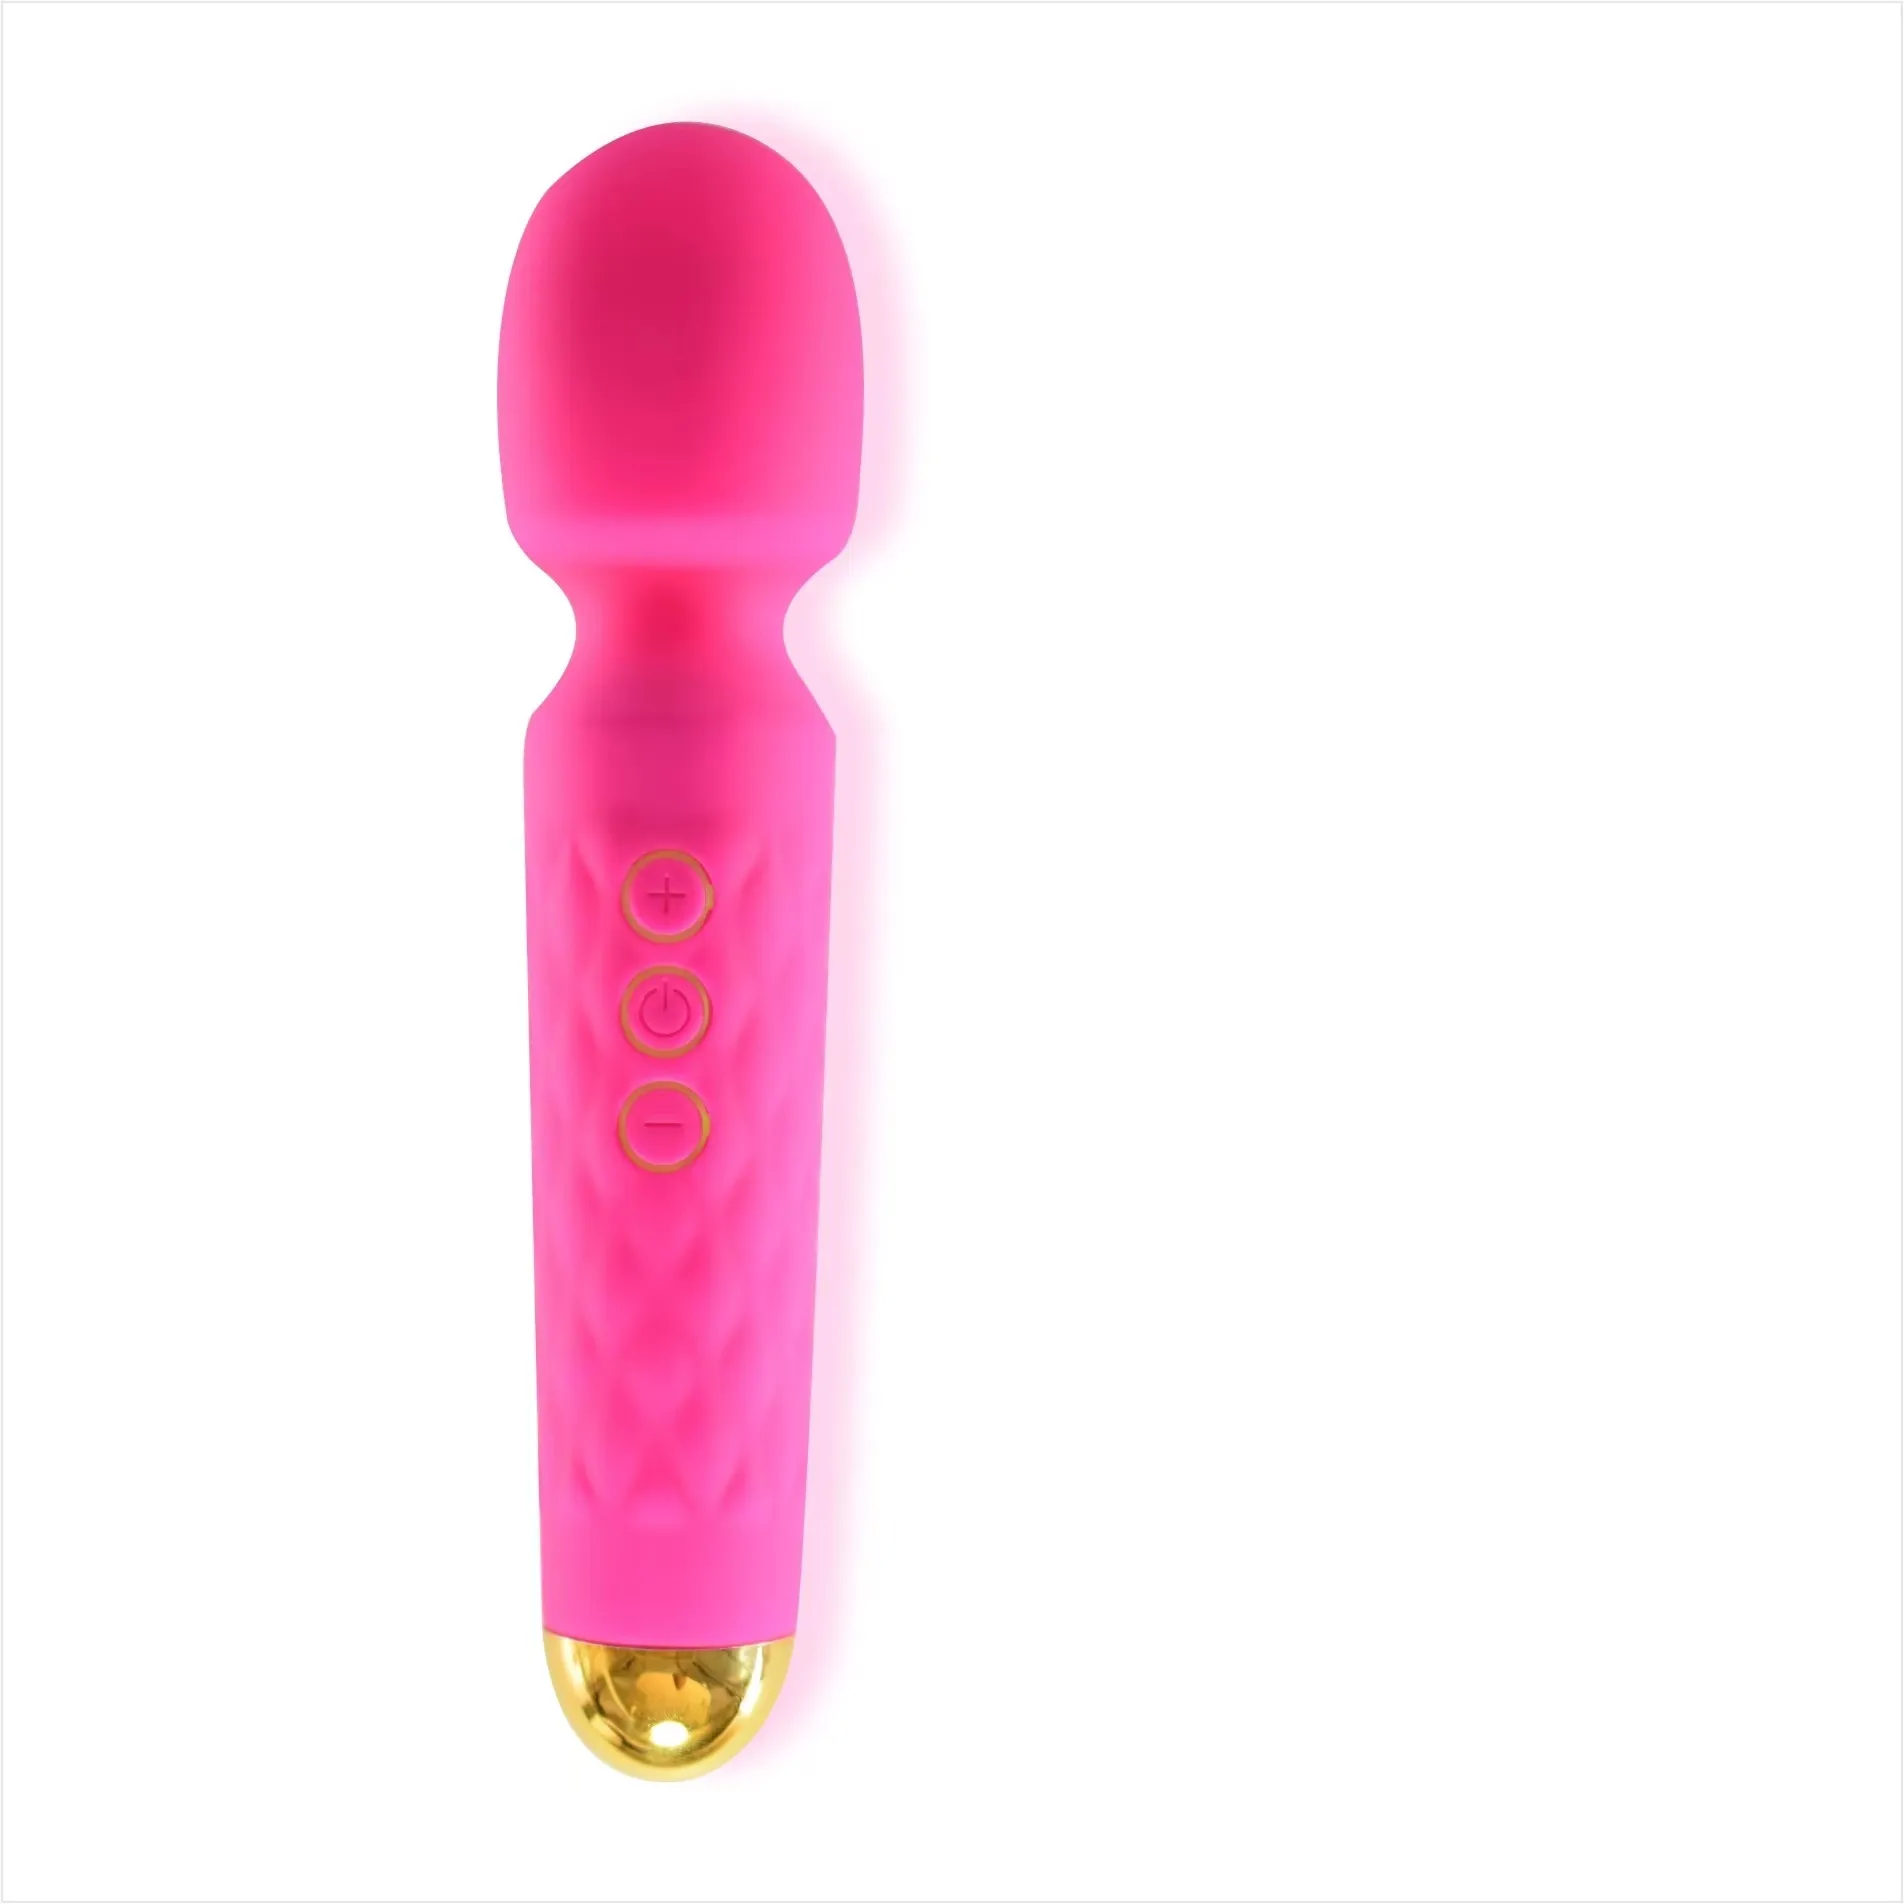 Vendita calda AV Stick femminile vibratore massaggio vaginale giocattoli sessuali per adulti masturbazione femminile produttori di dispositivi